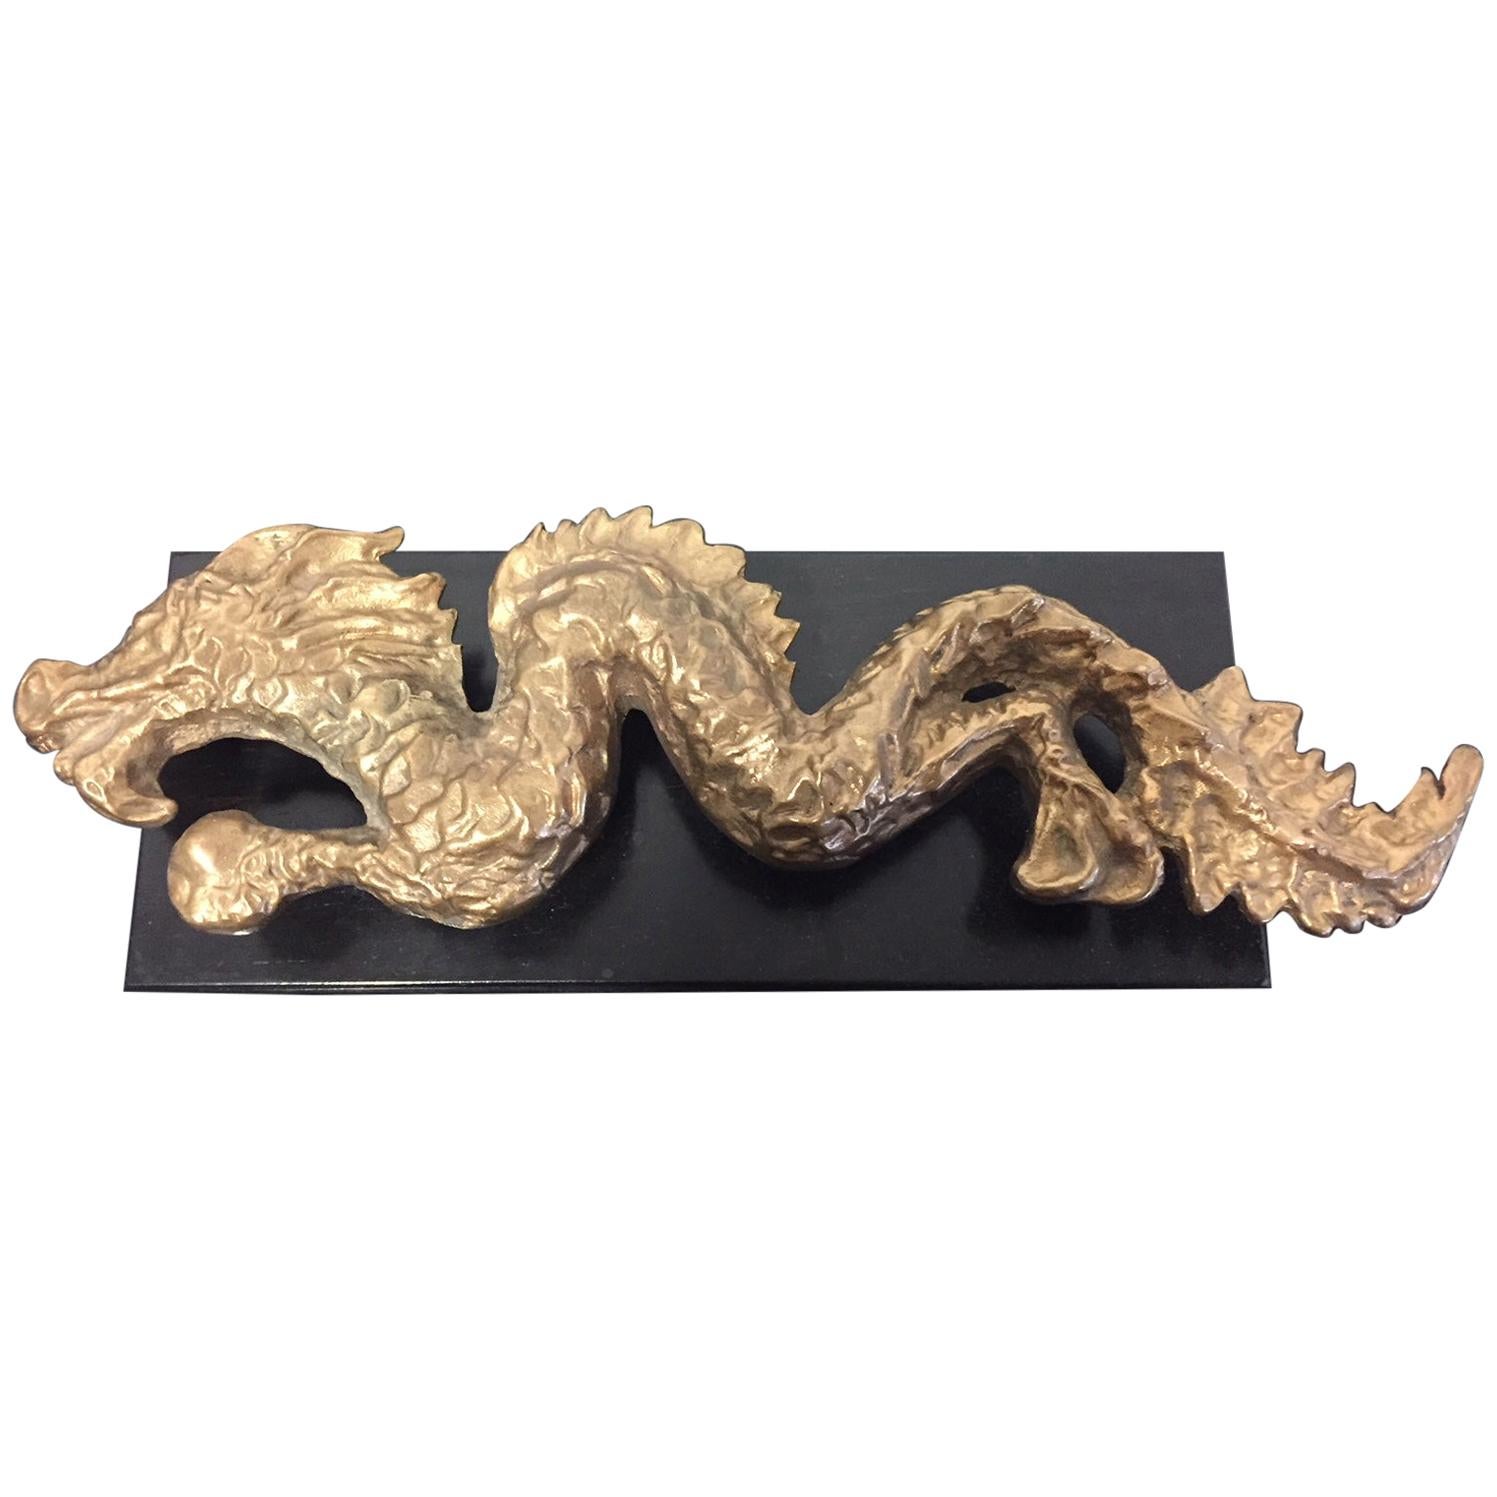 Bronze Dragon Sculpture Wax Cast and Fire Gilding by Tillmann Köhn